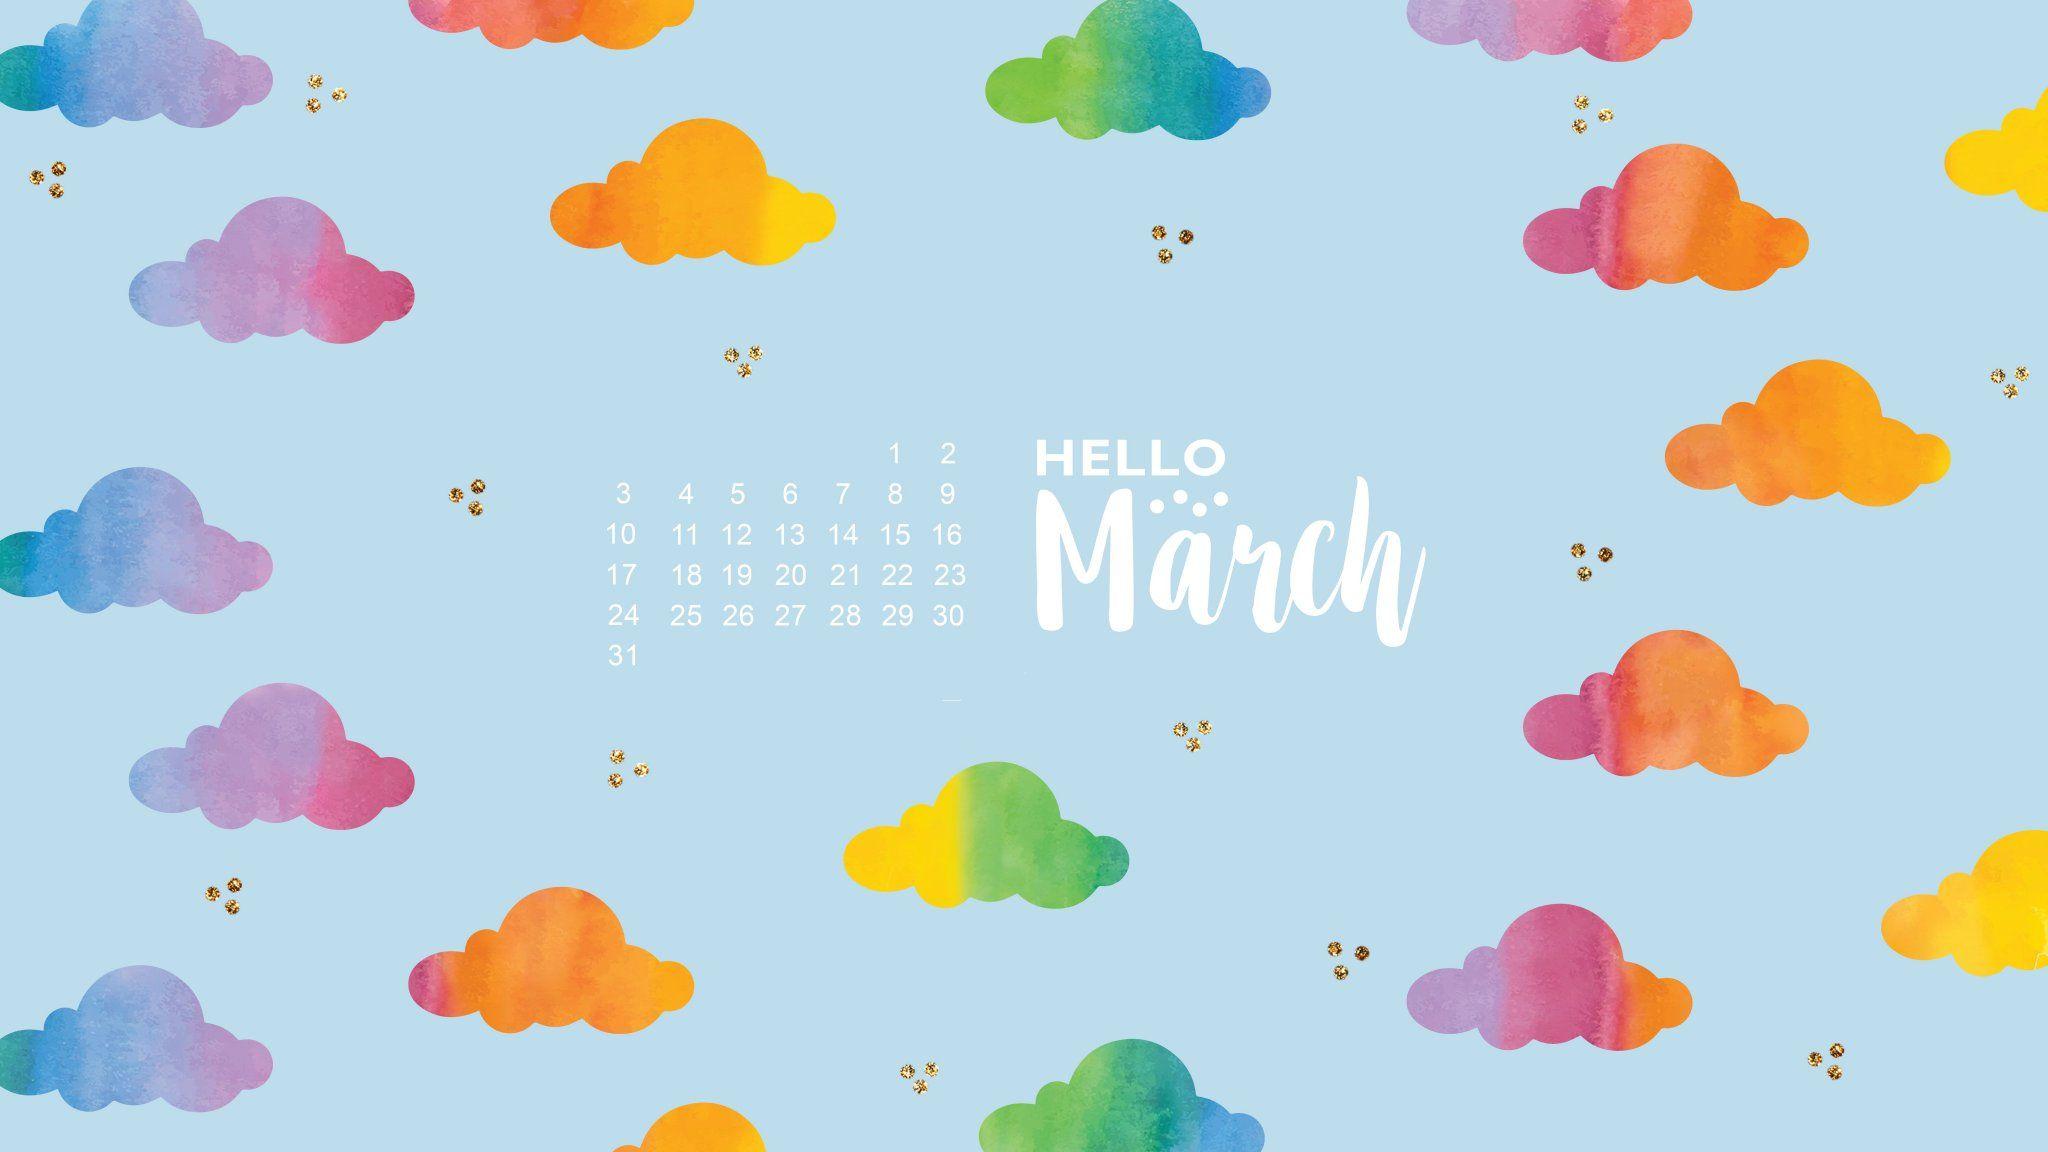 March 2019 Calendar Desktop Wallpaper. March 2019 Calendar